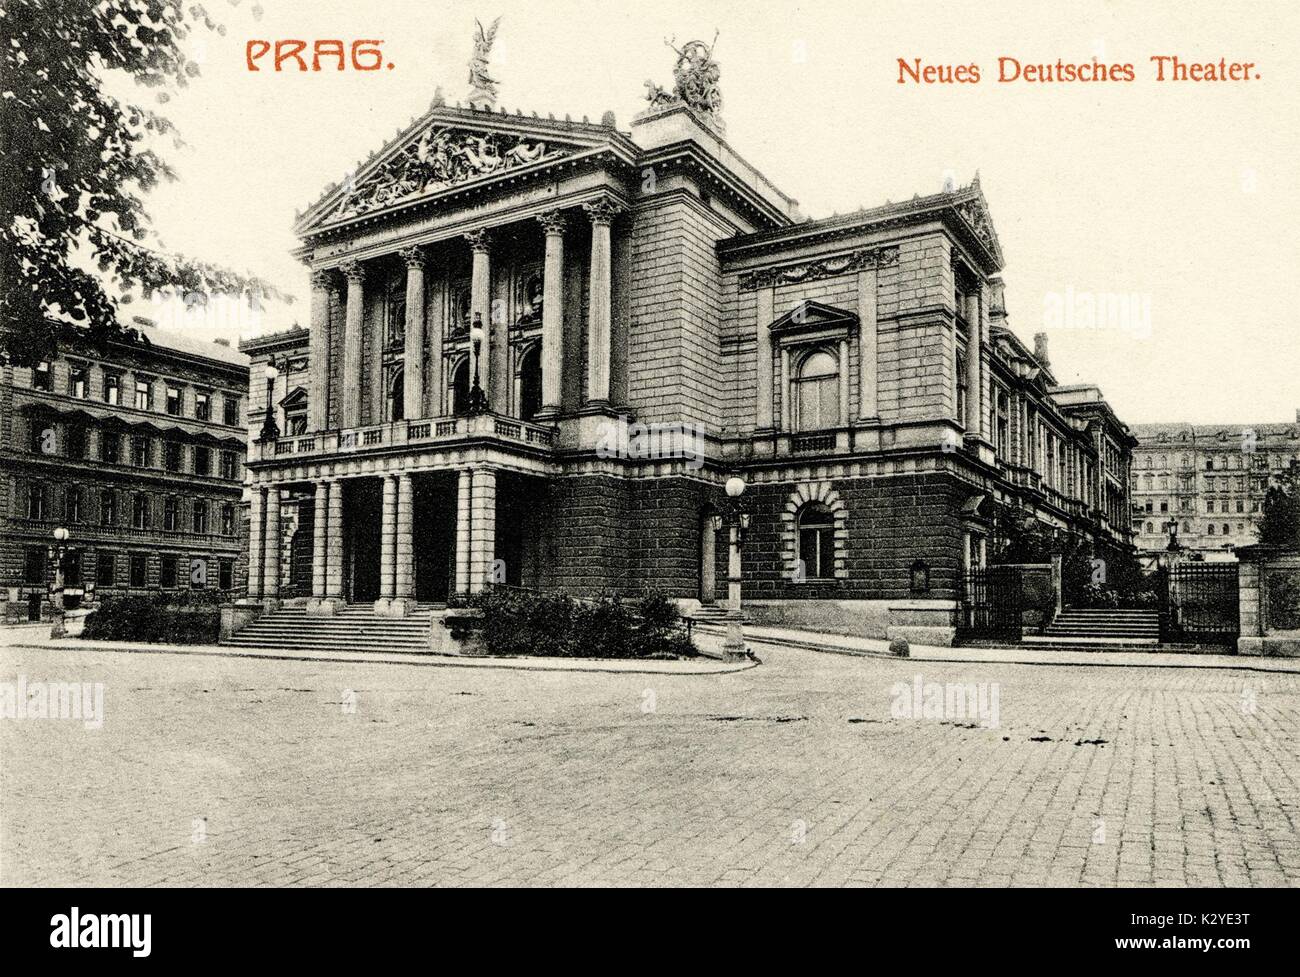 PRAGUE. Neues Deutsches Theater . New German theatre Stock Photo